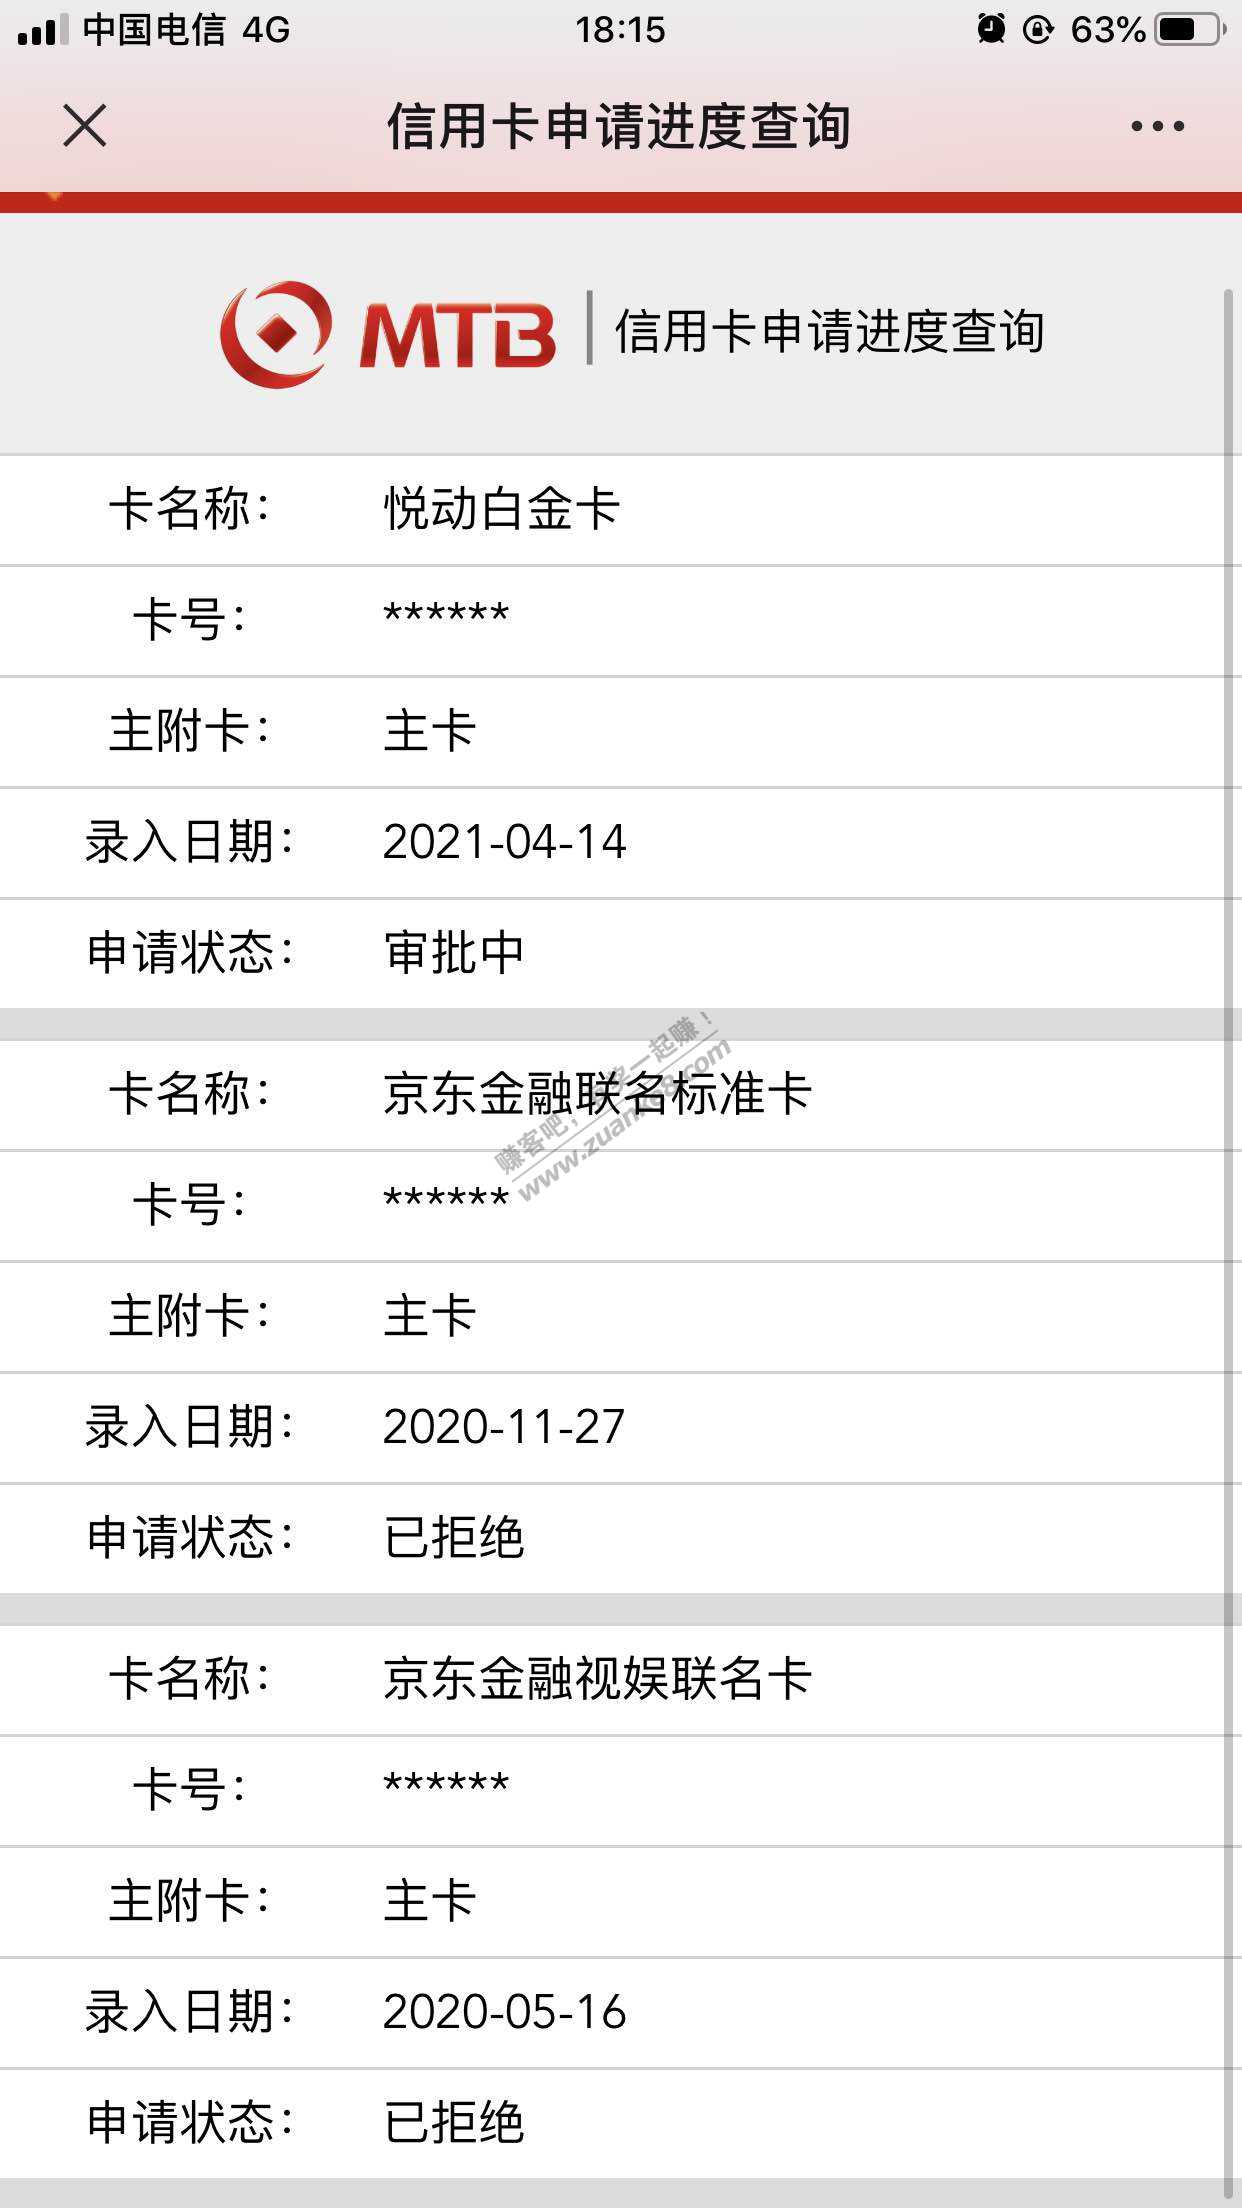 第十九行民泰银行消费返现xing/用卡之前秒拒这次2天了还在审核希望通过-惠小助(52huixz.com)